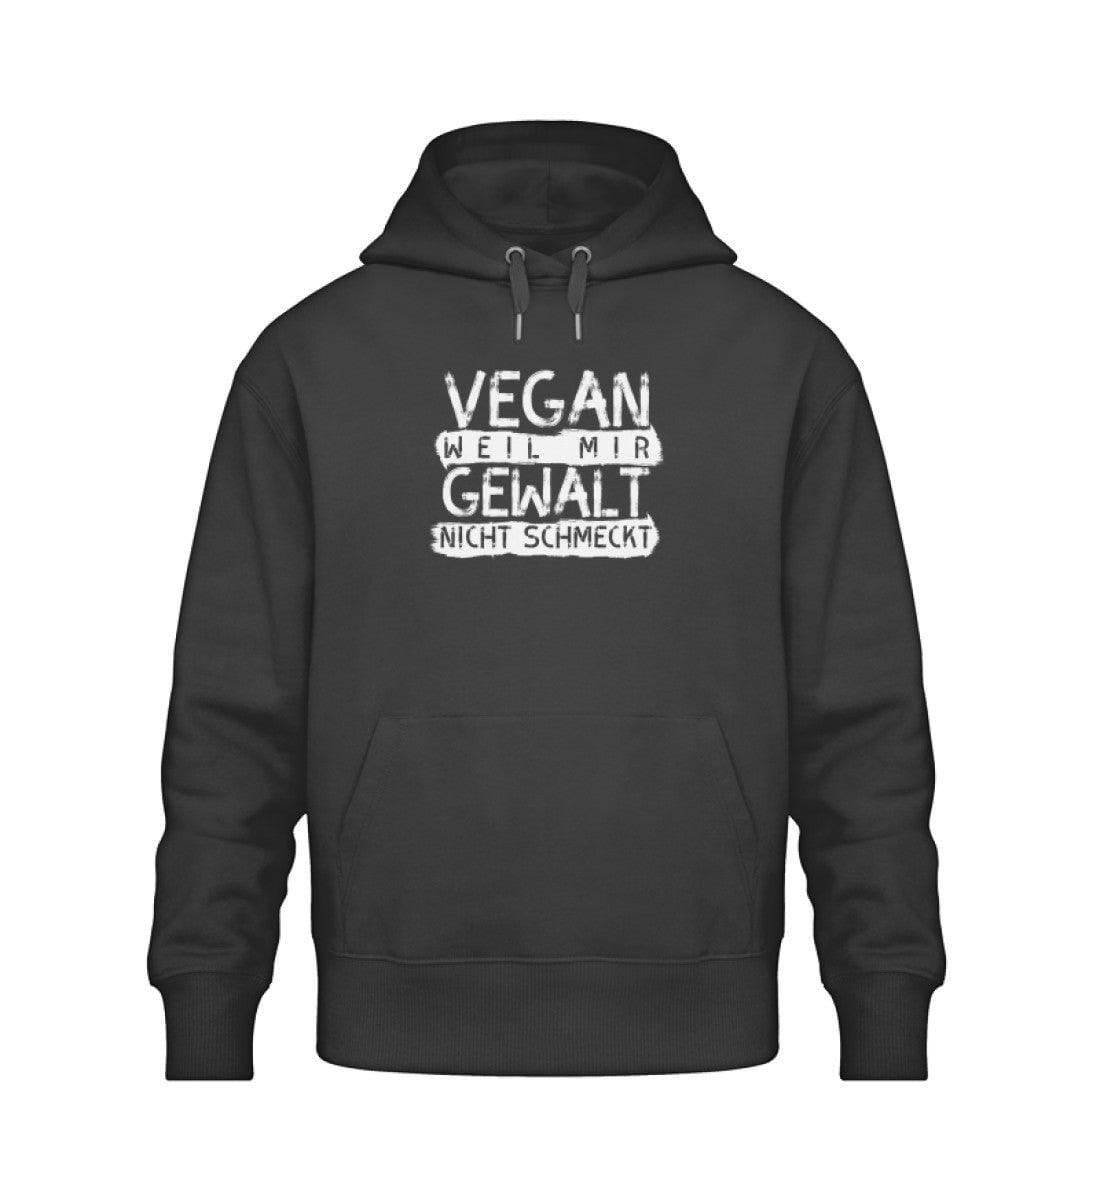 Vegan weil mir Gewalt nicht schmeckt - Unisex Oversized Organic Hoodie Slammer Oversized Hoodie ST/ST Shirtee Schwarz XS 